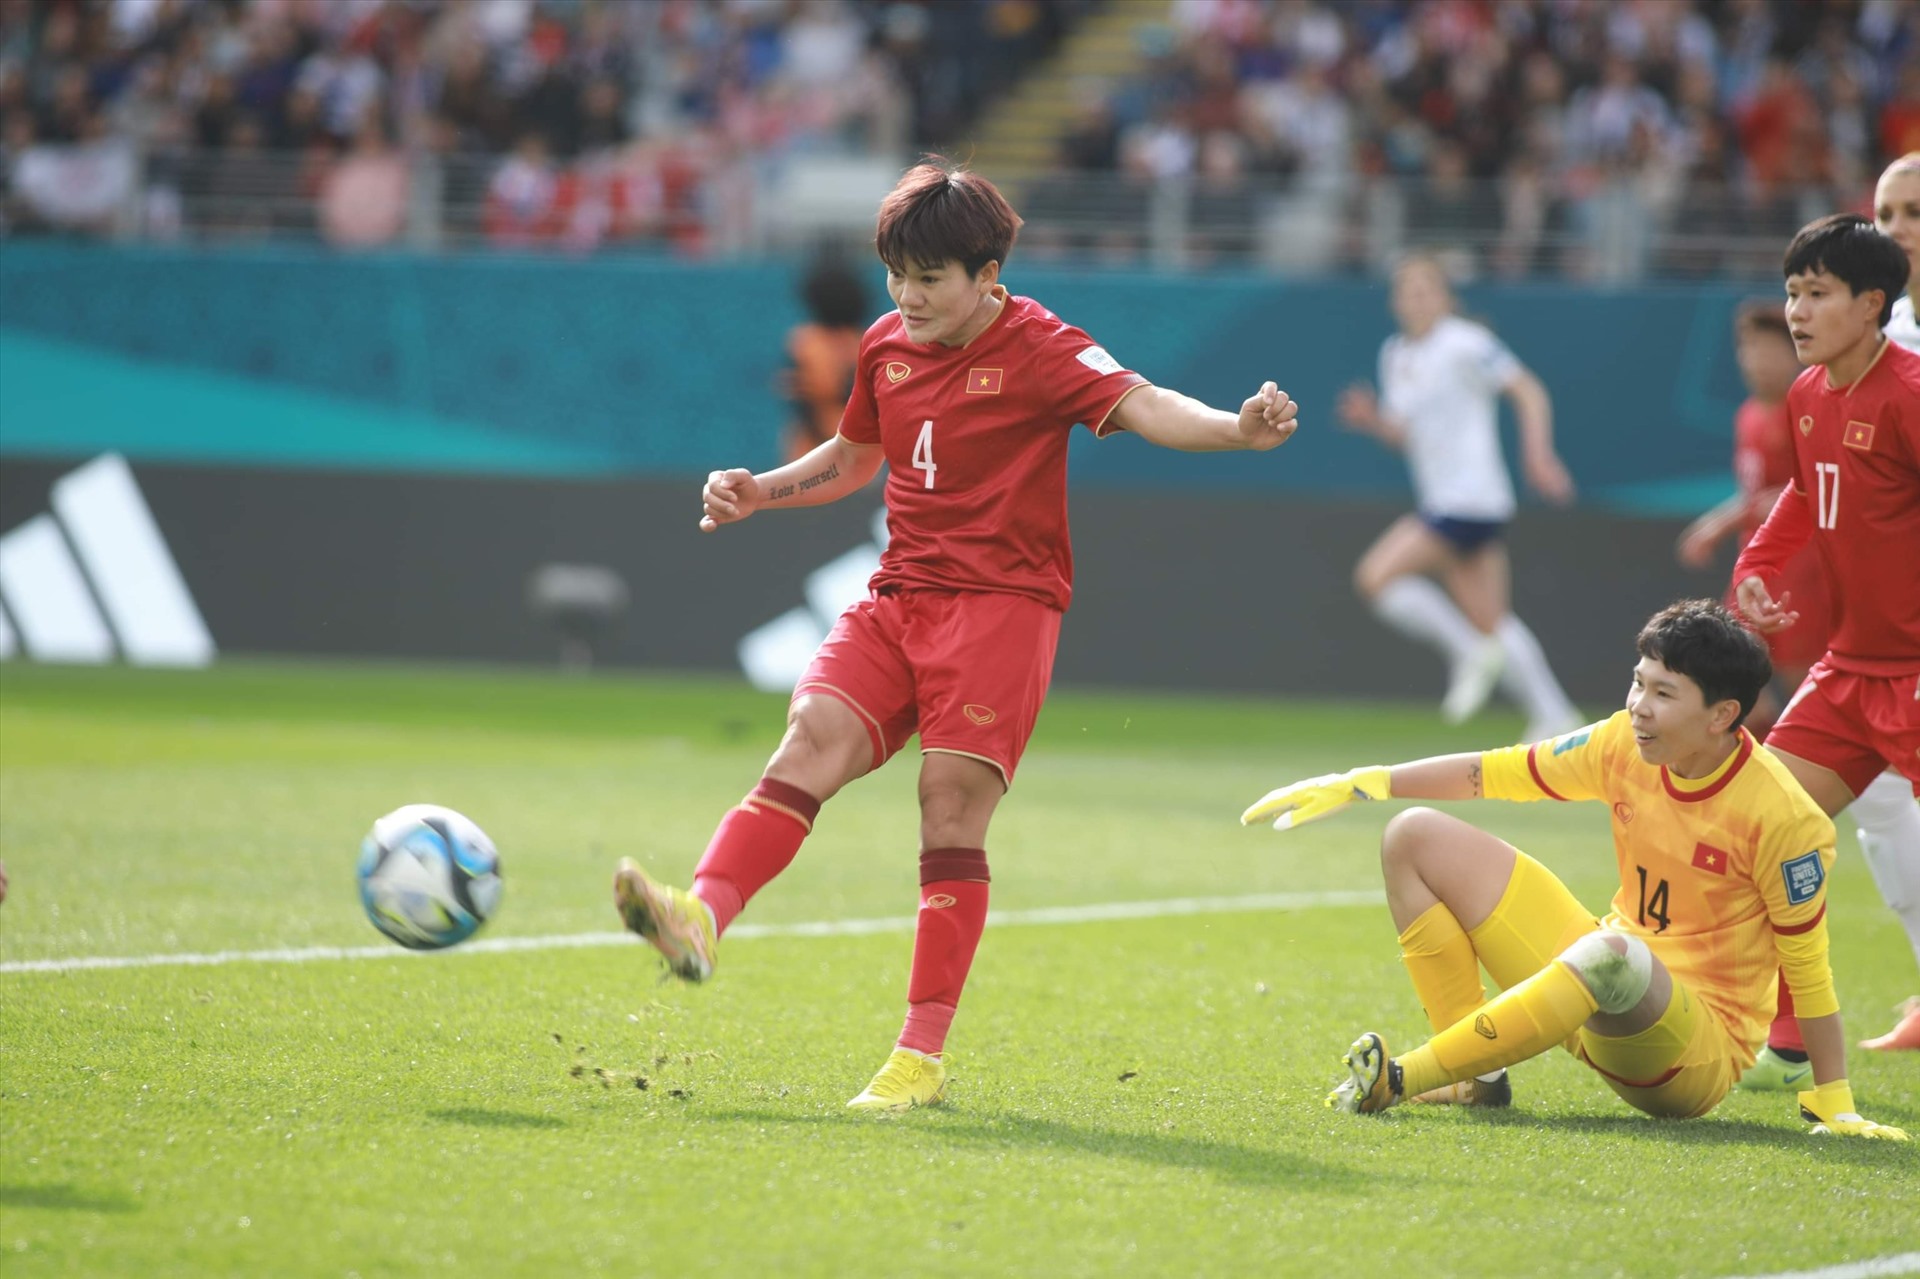 Bước sang hiệp 2, thế trận tiếp tục thuộc về đội tuyển nữ Mỹ. Tuy nhiên, Kim Thanh và đồng đội vẫn thi đấu phòng ngự chặt chẽ, chờ đợi cơ hội phản công.